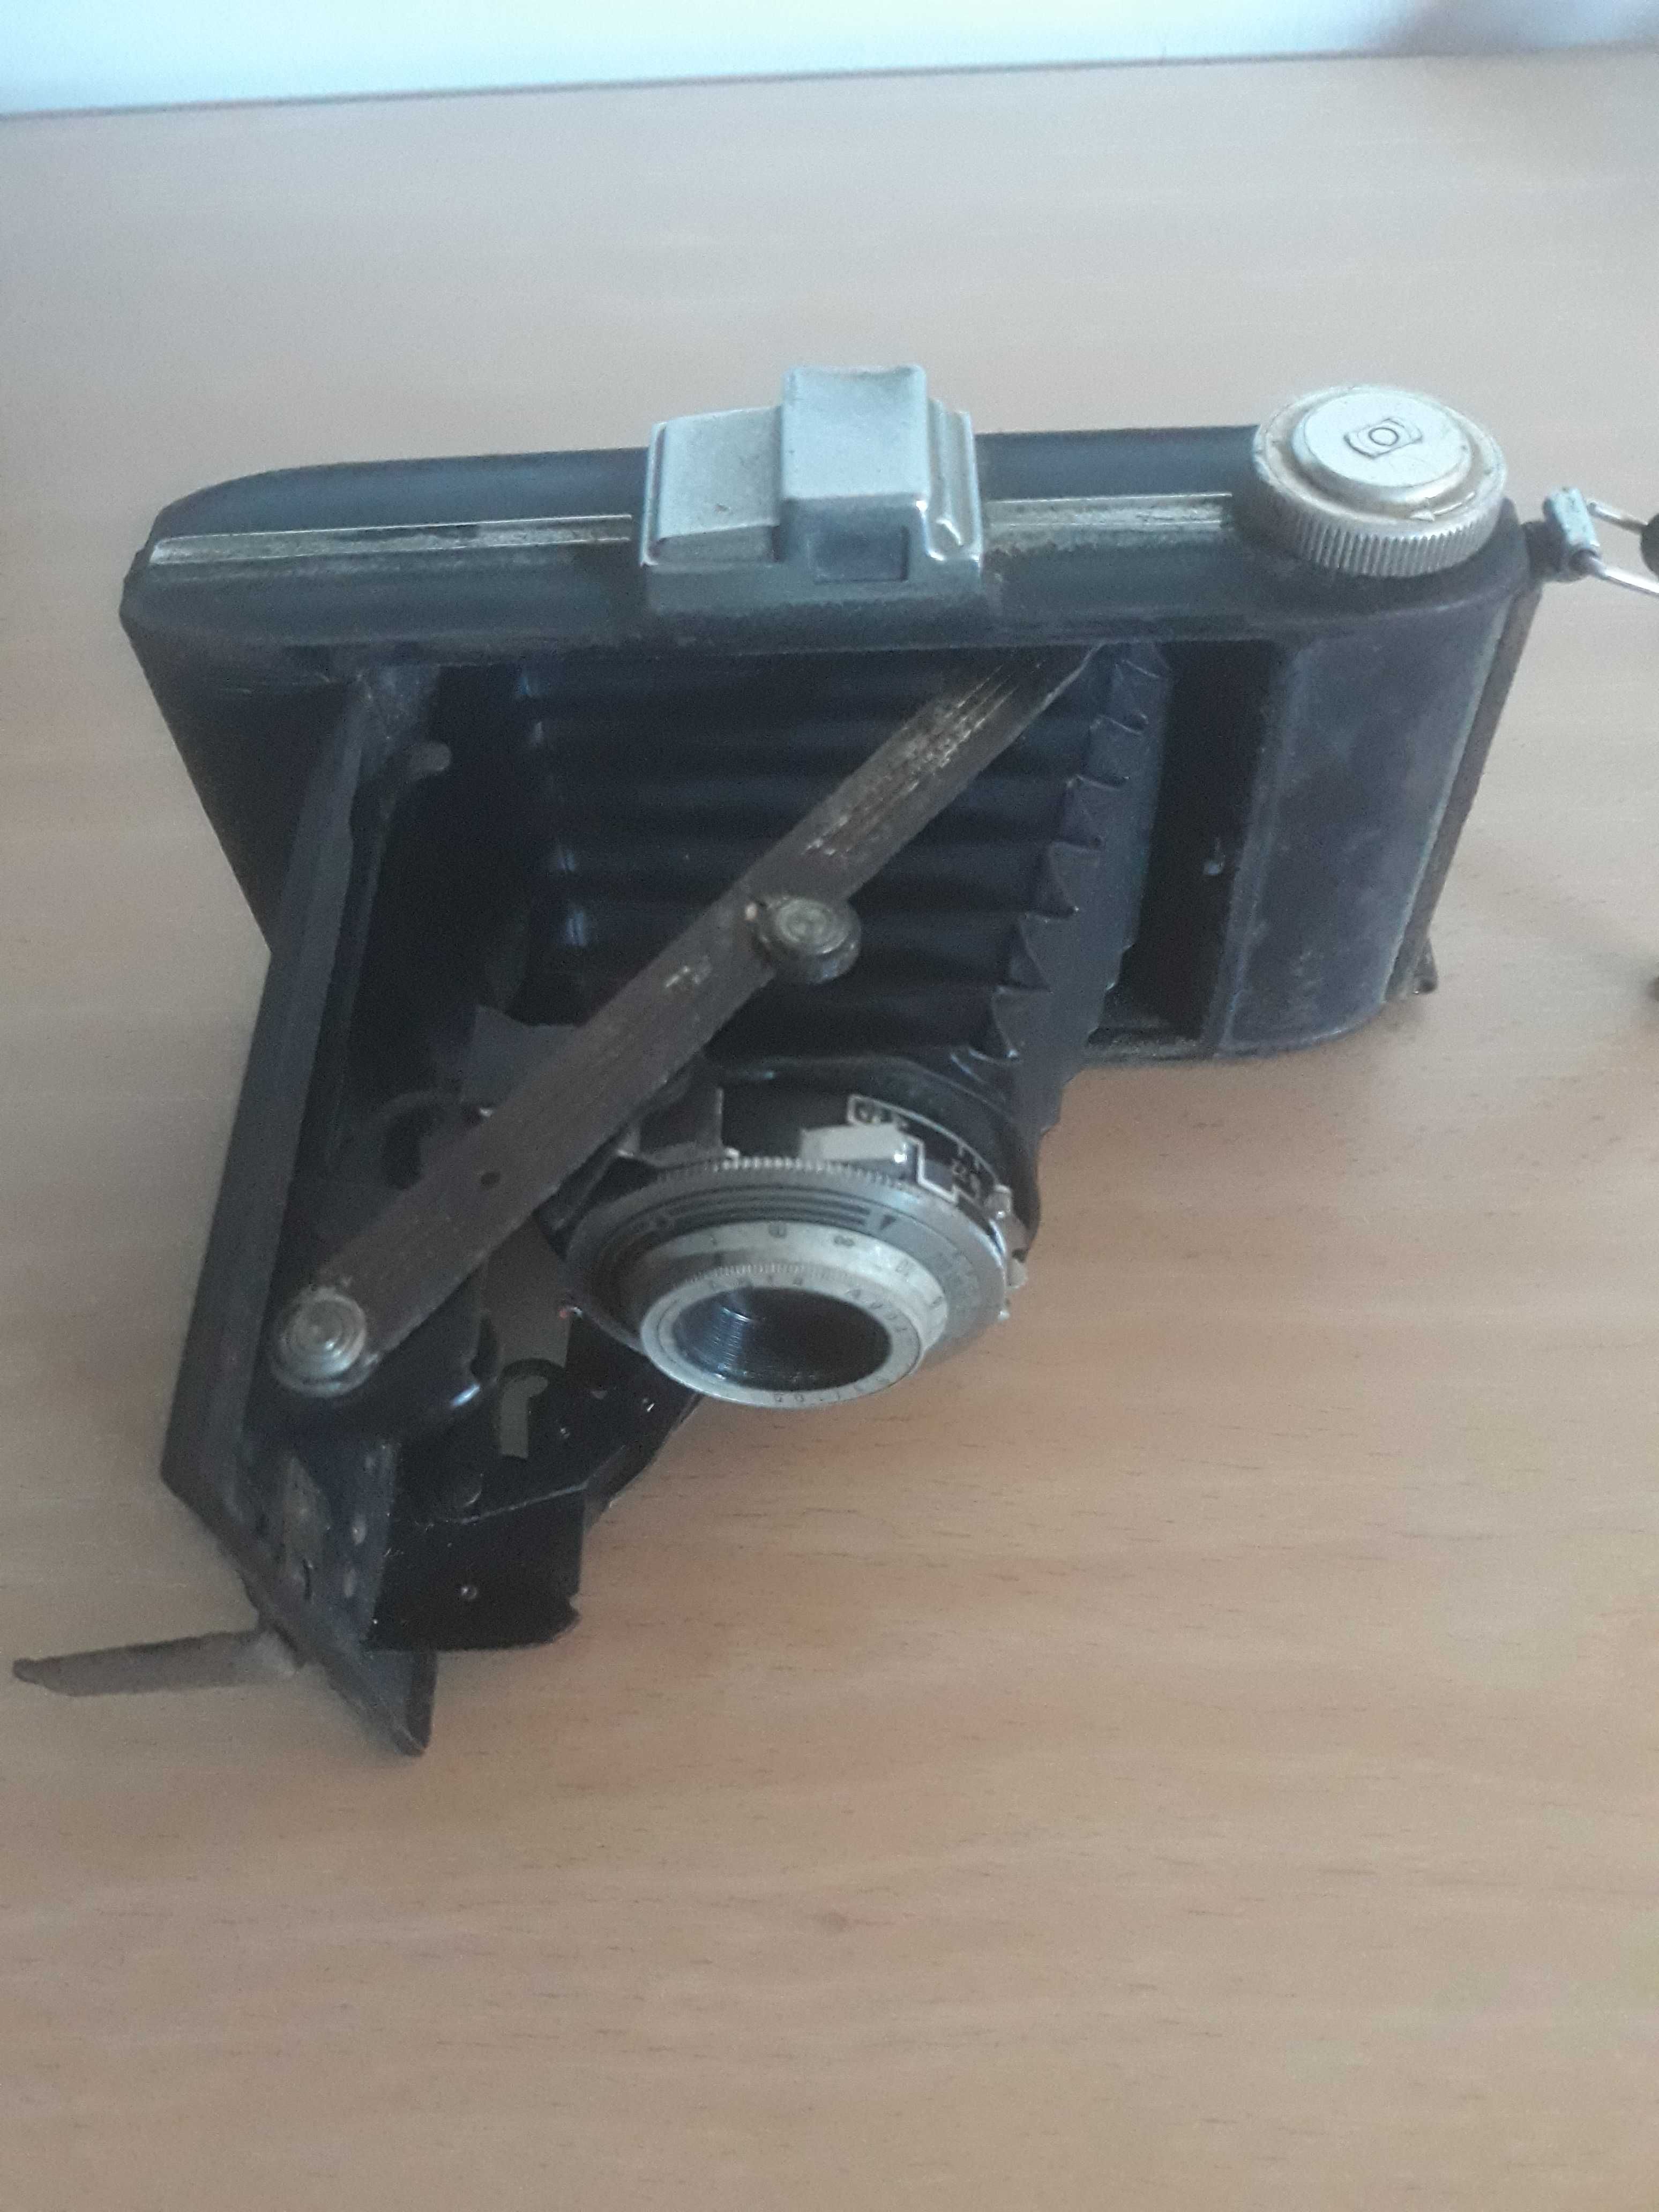 Máquina de Fotografar Kodak de 1925